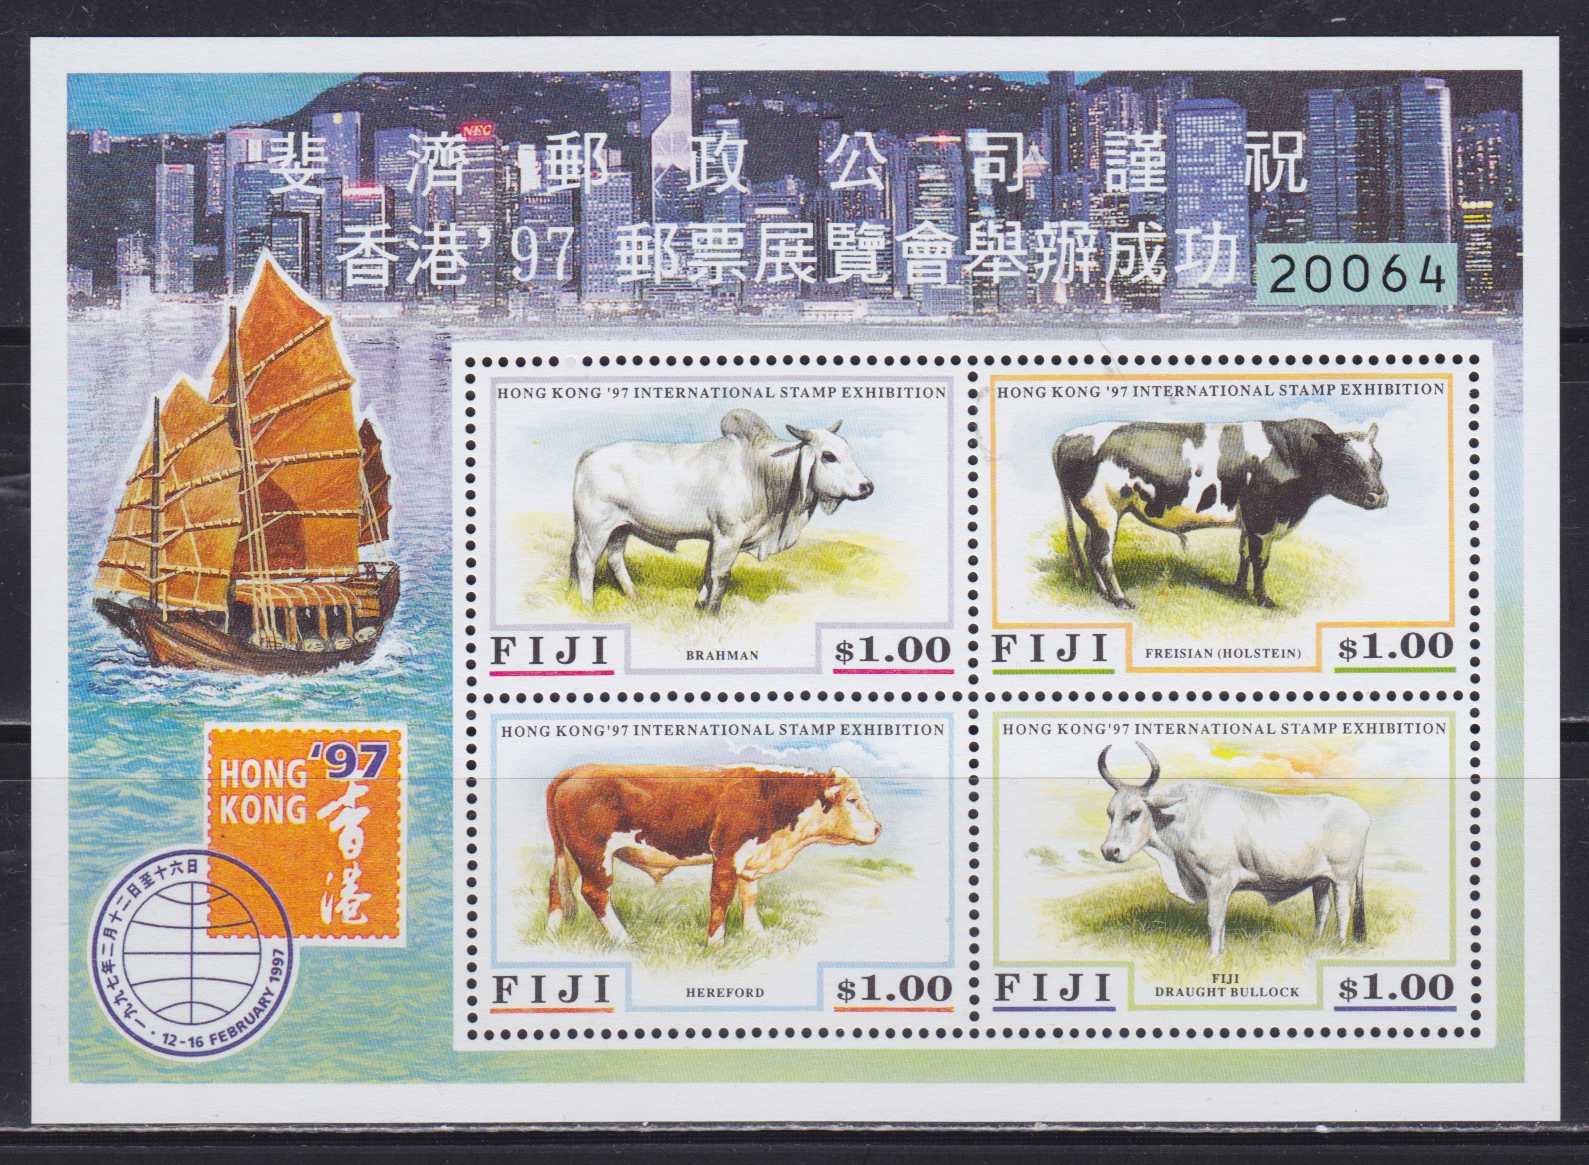 Stampworld марки. Почтовые марки Фиджи. Почтовые марки Hong Kong фауна. Корова на почтовой марке. Почтовые марки Гонконг по годам.